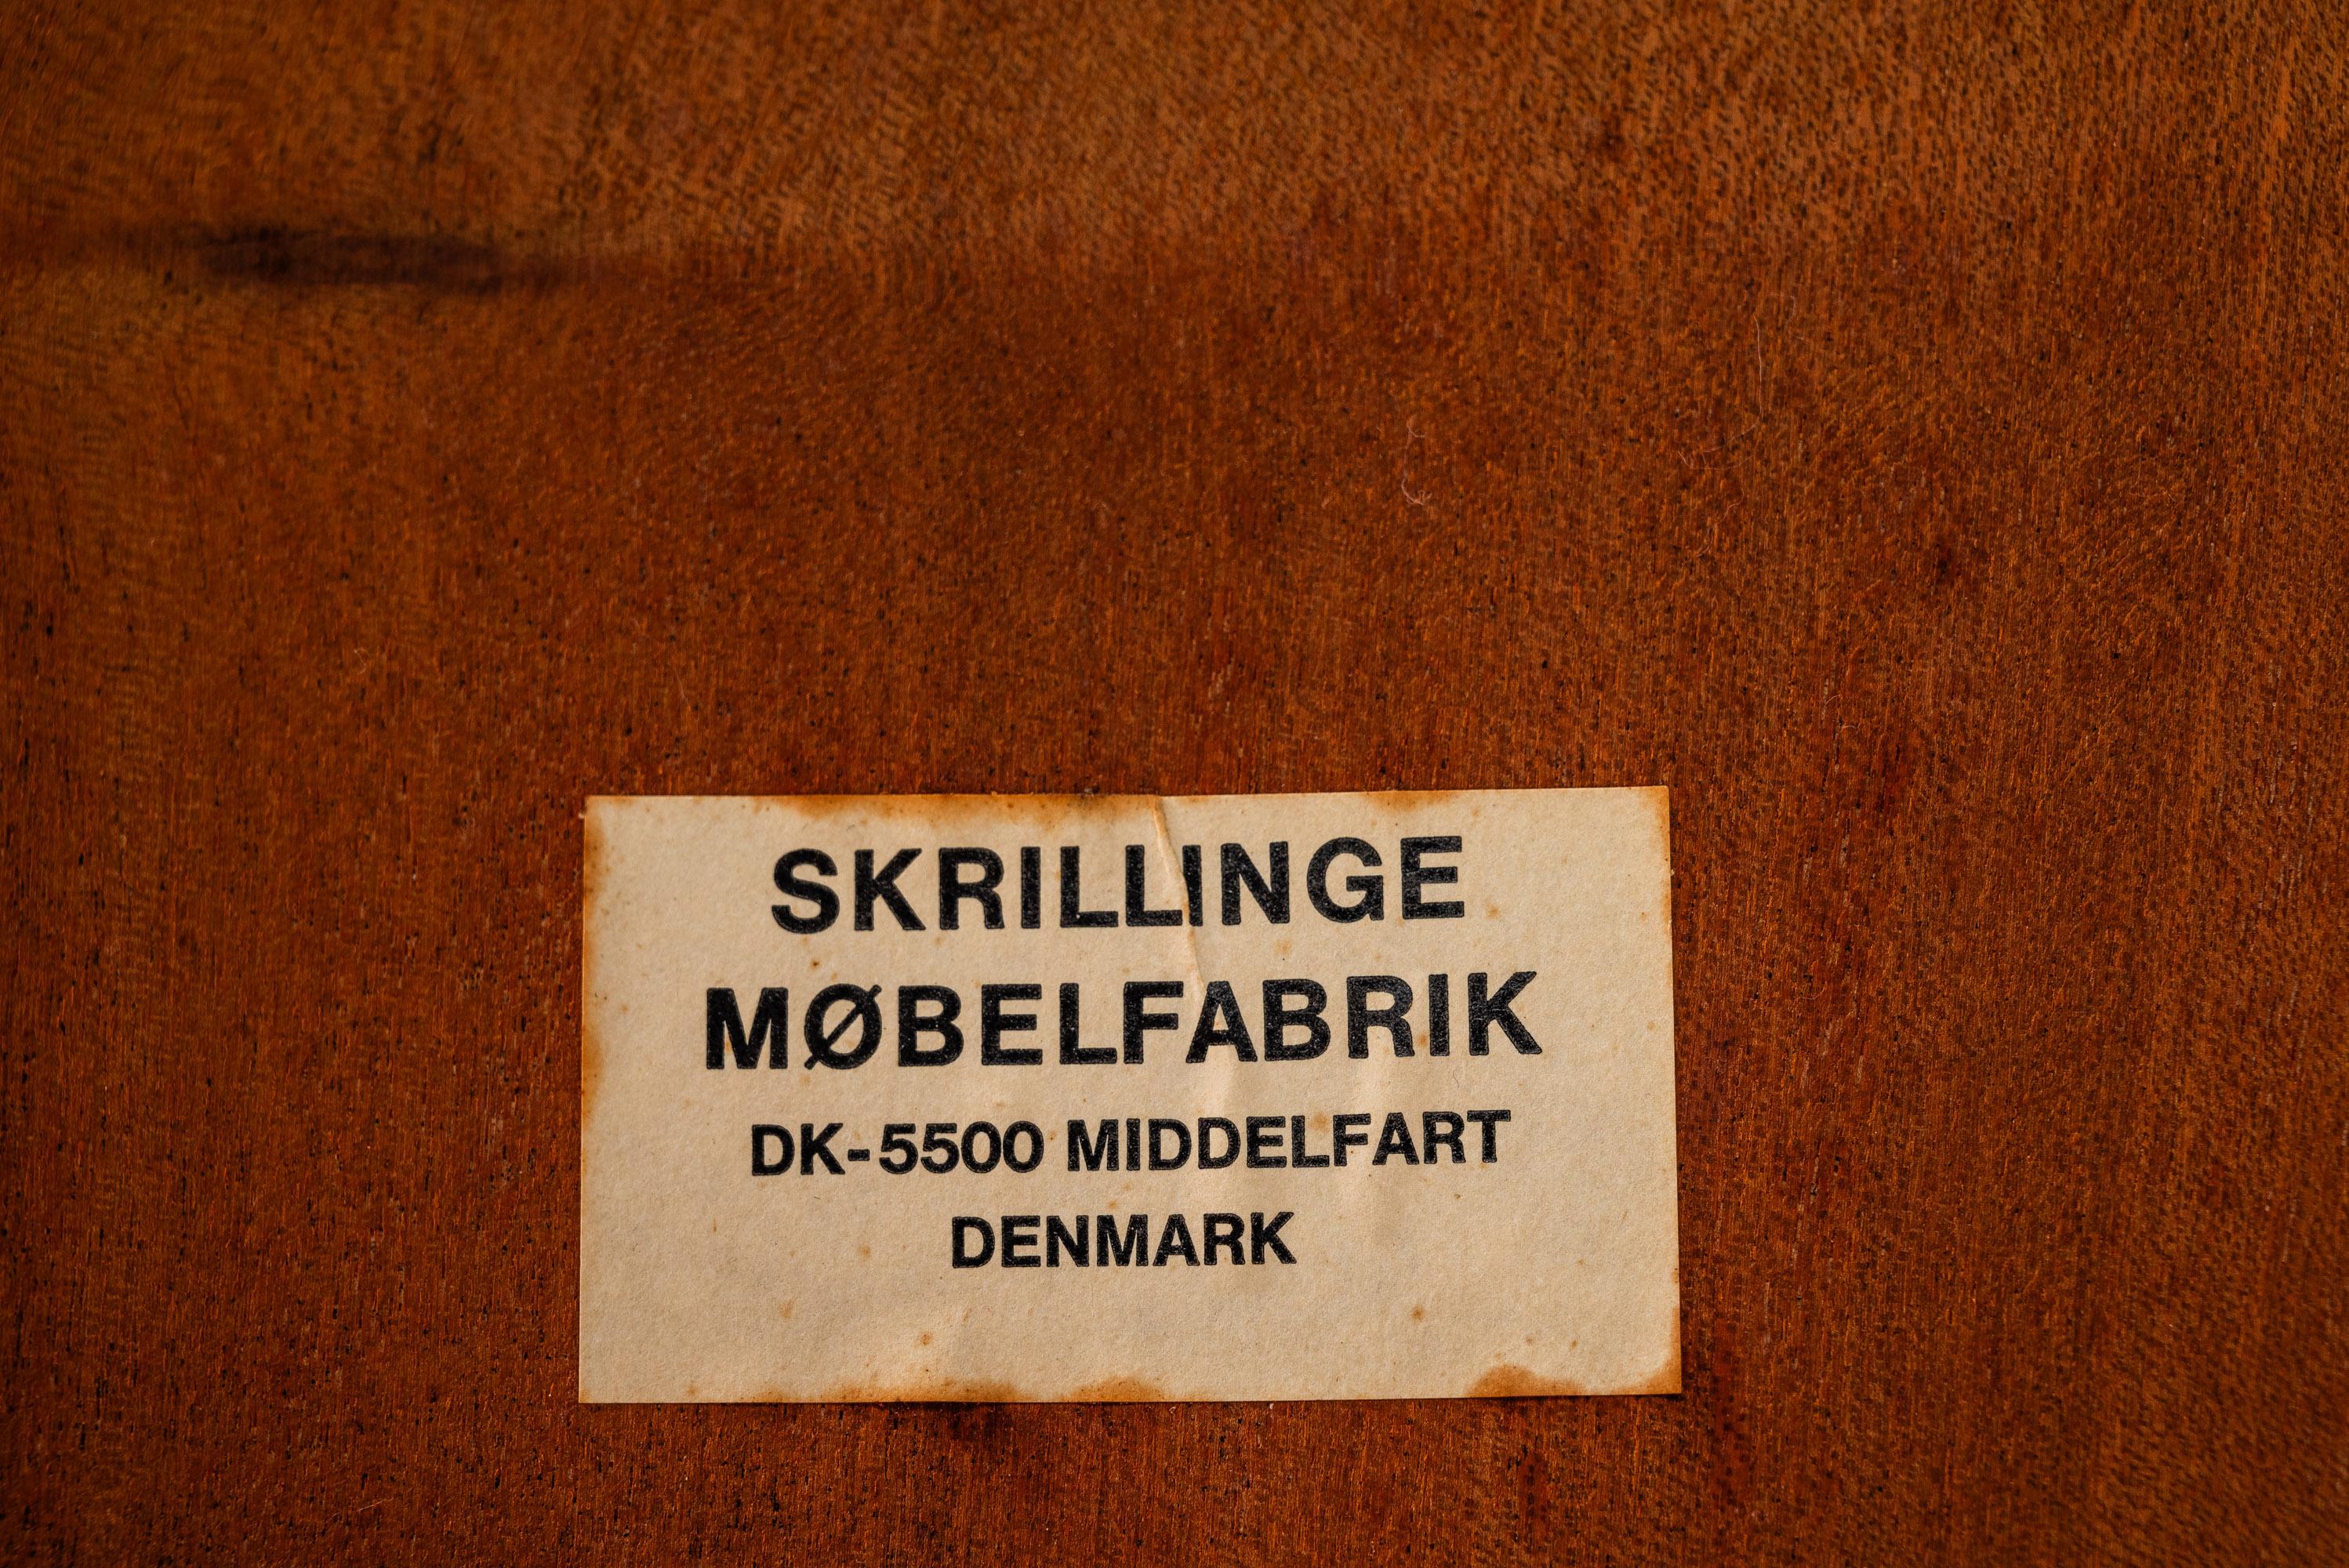 Low Profile Coffee Table in Teak w/ Glass Top by Skrillinge Mobelfabrik, 1970s For Sale 5